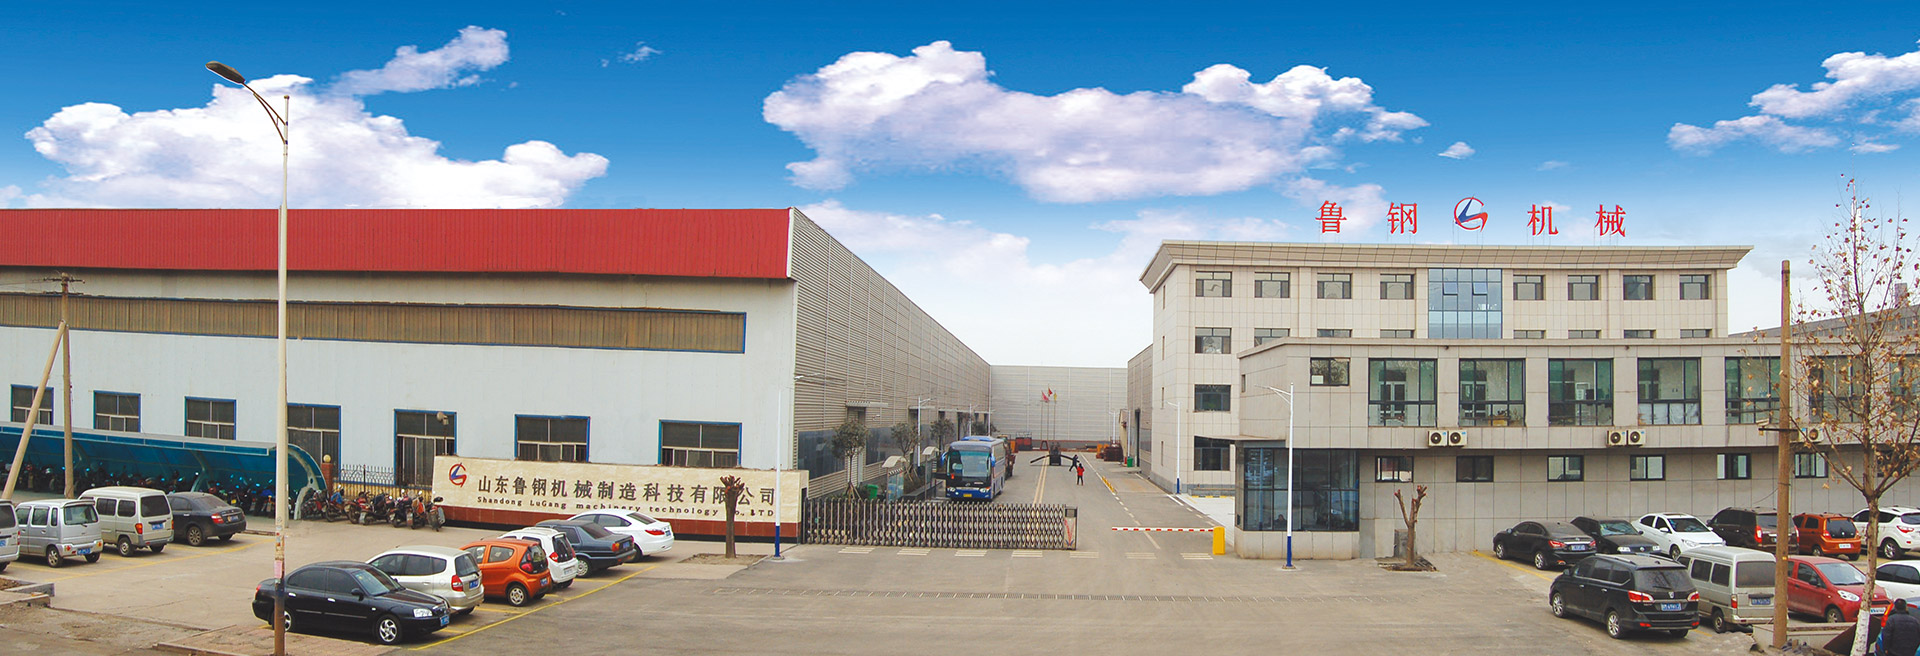 山东鲁钢机械制造科技有限公司